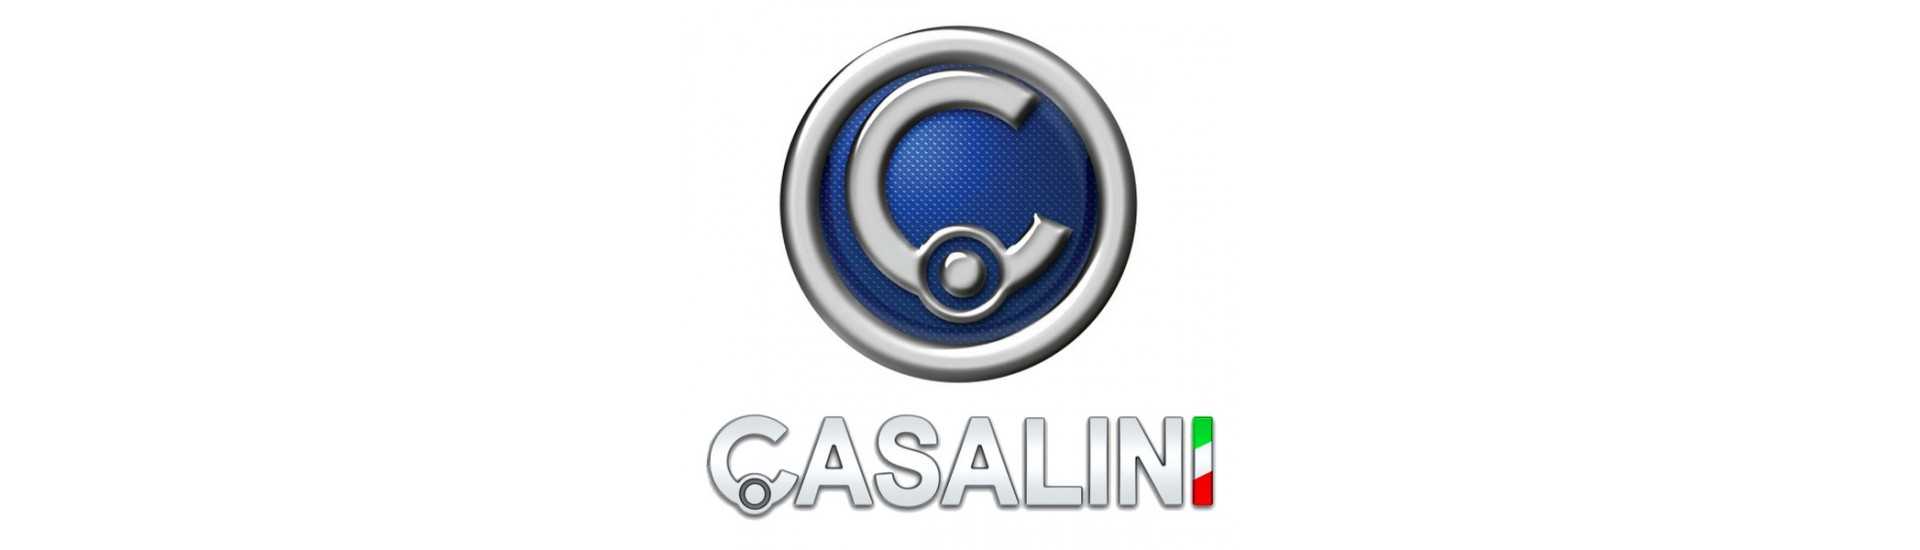 Inredningsdörr hanterar bästa bilpris utan licens Casalini